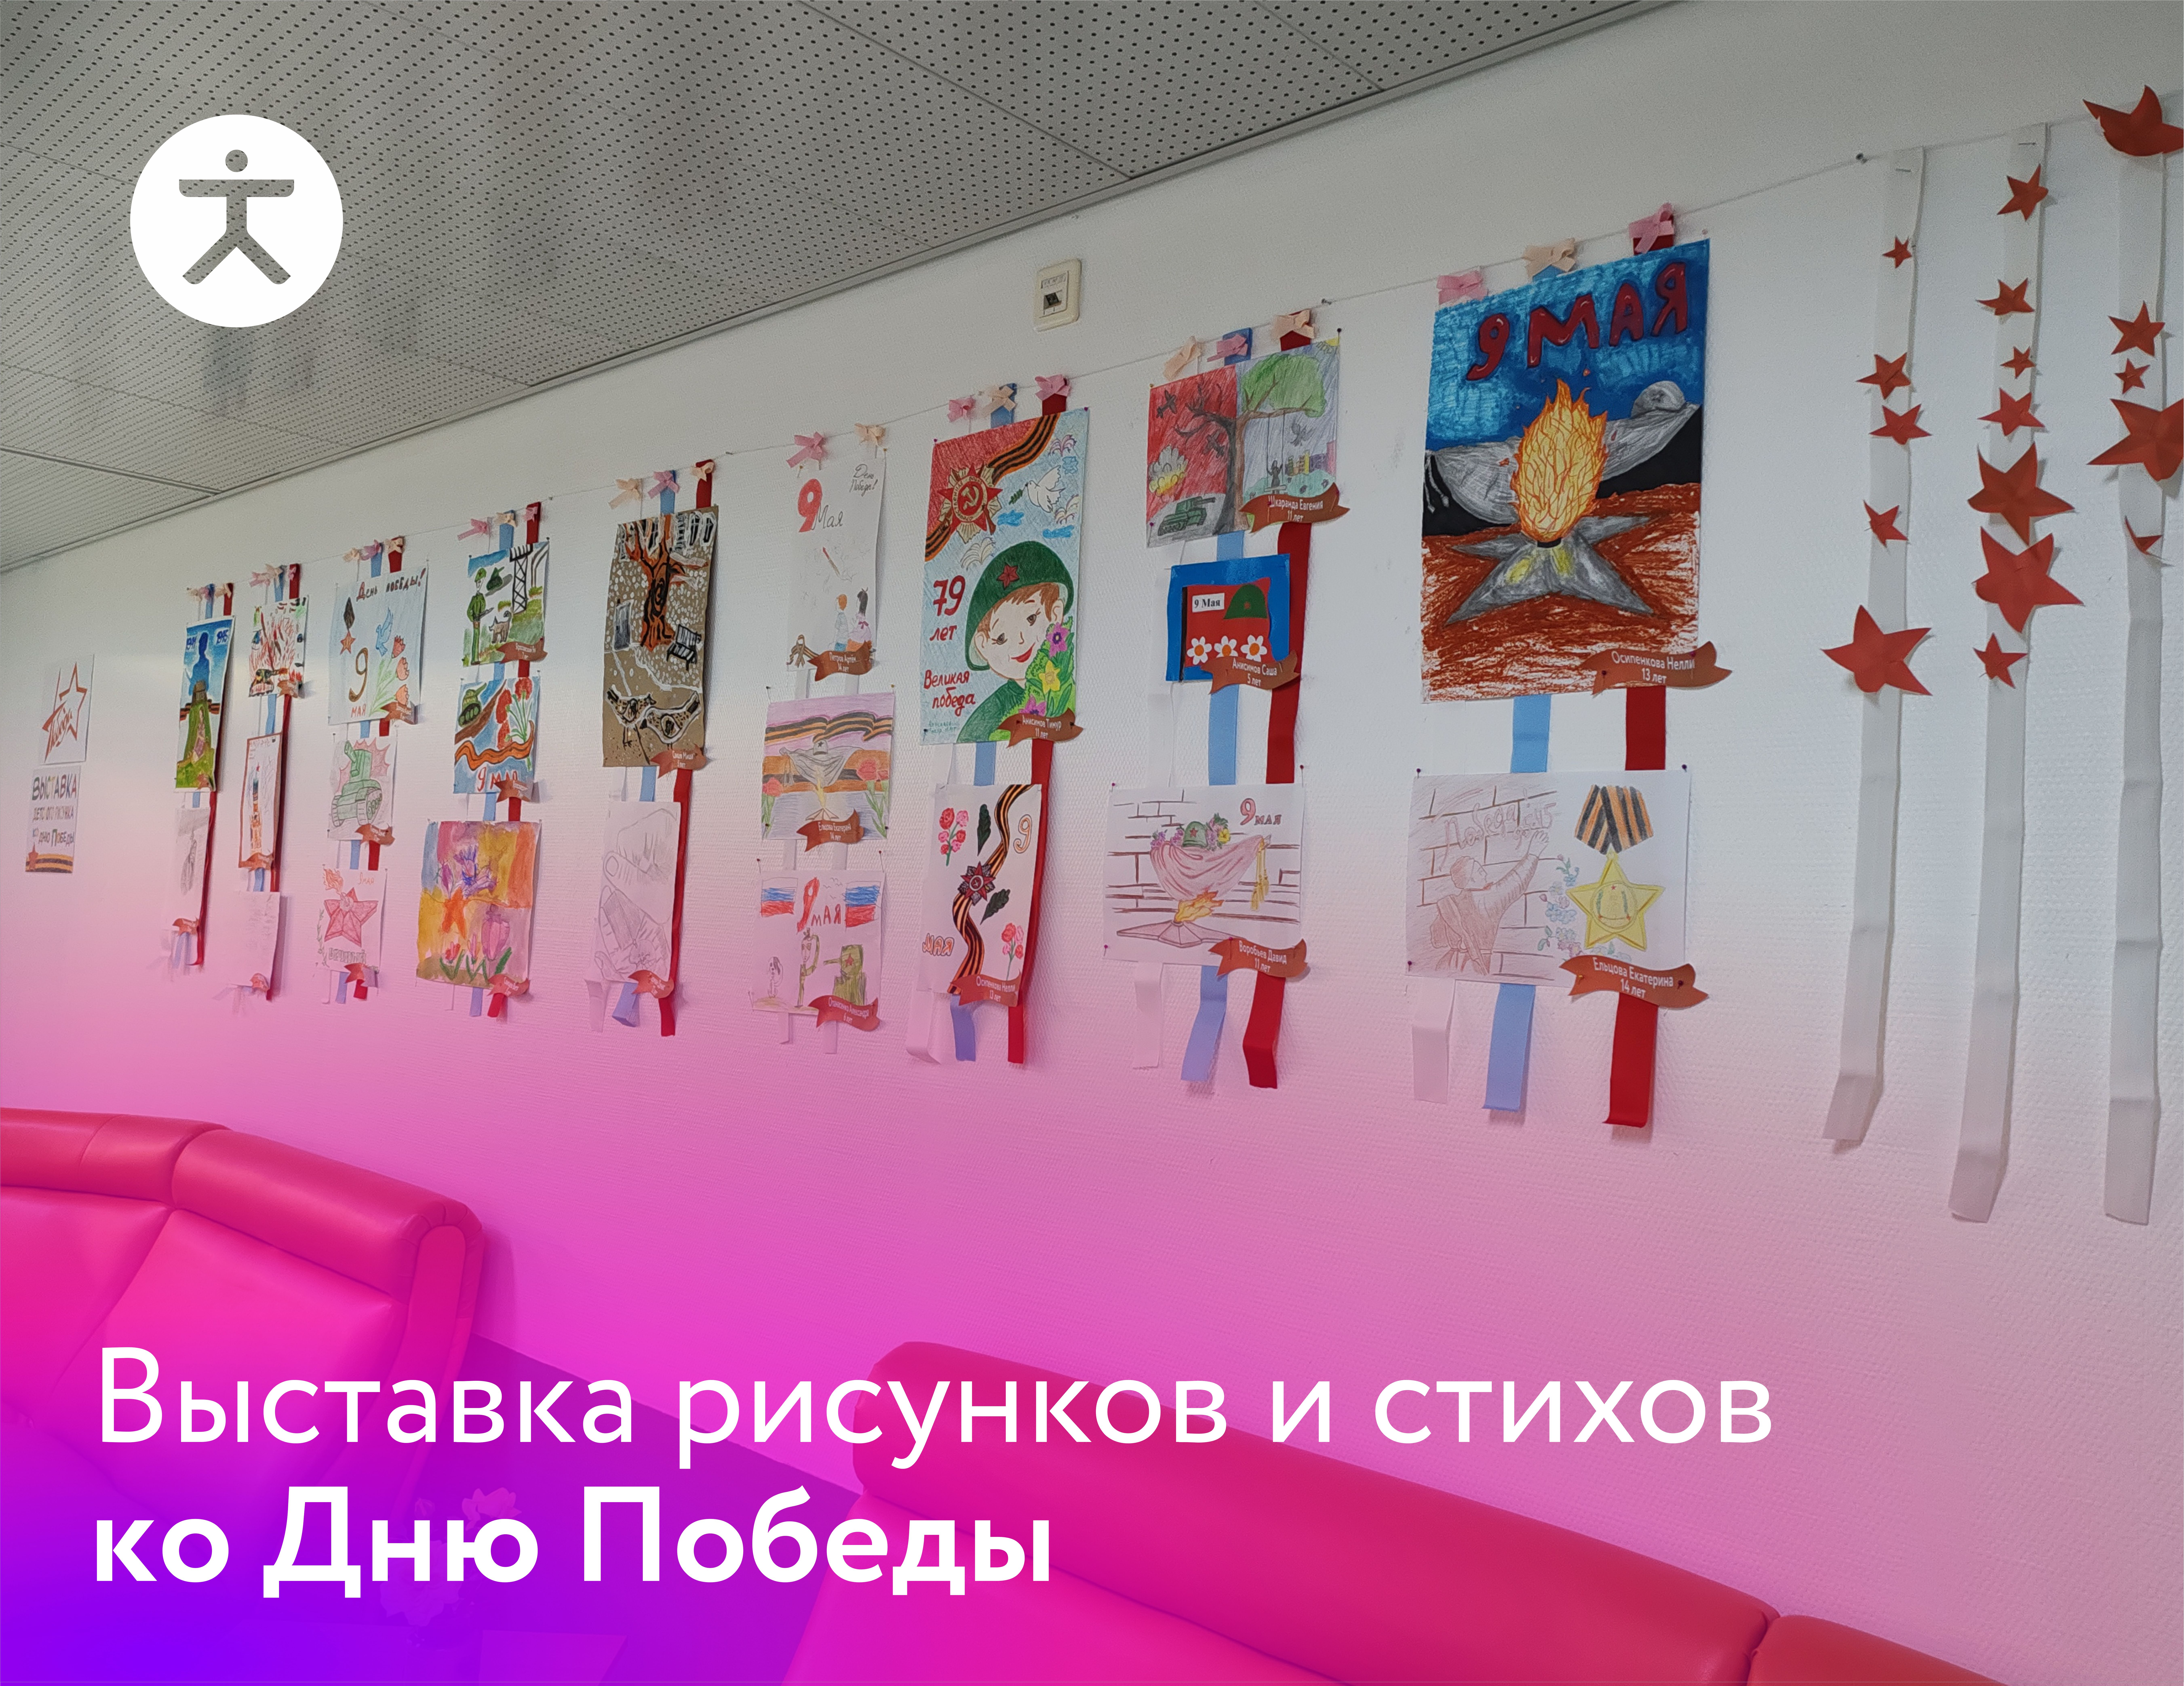 Выставка ко Дню Победы проходит в Кардиоцентре Хабаровска